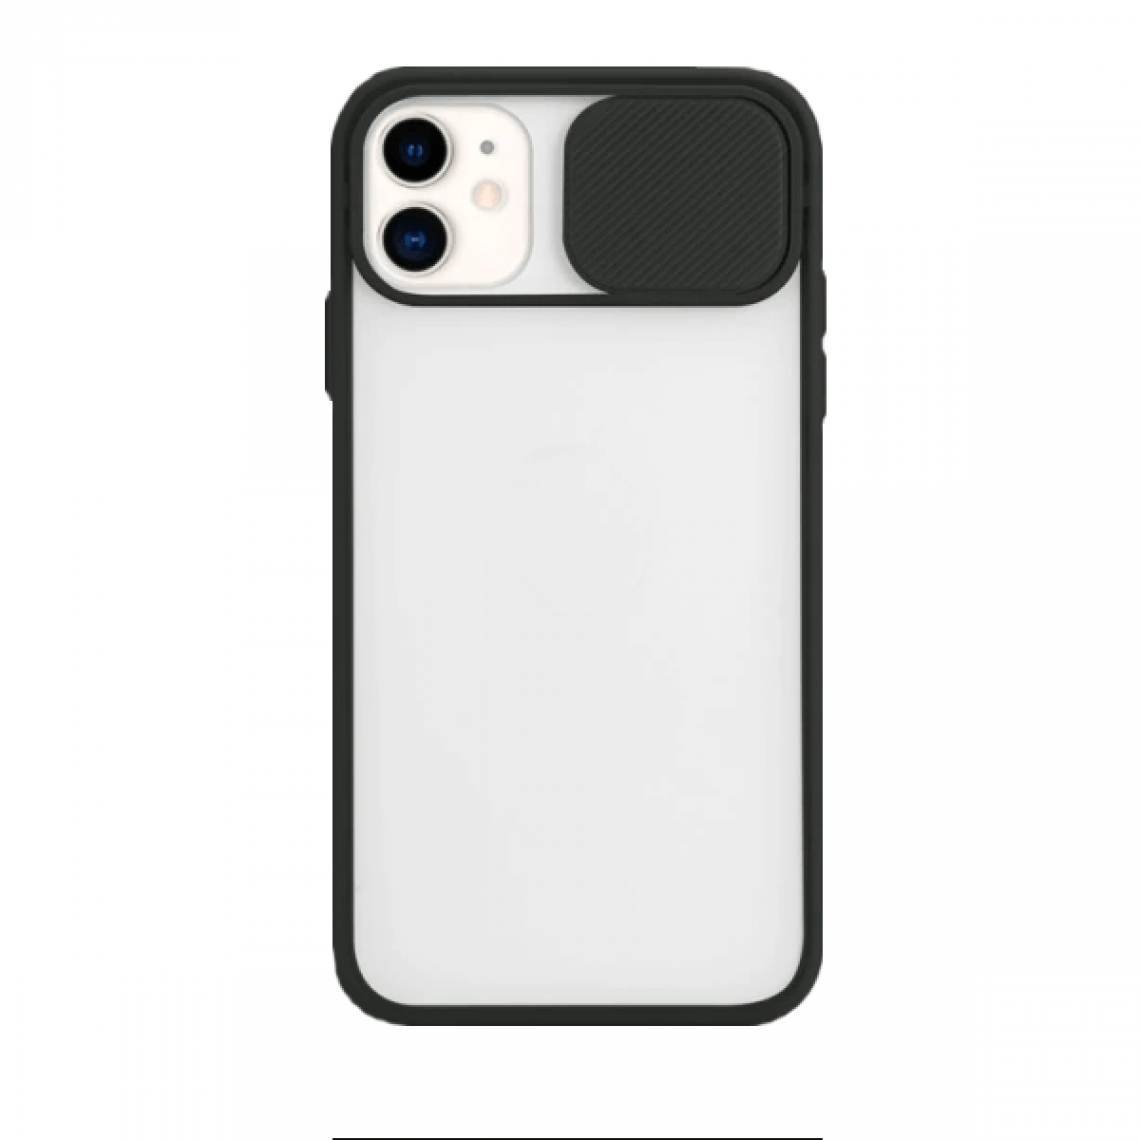 Phonecare - Coque avec fenetre anti-choc mat pour iPhone 11 Pro Max - noir - Coque, étui smartphone